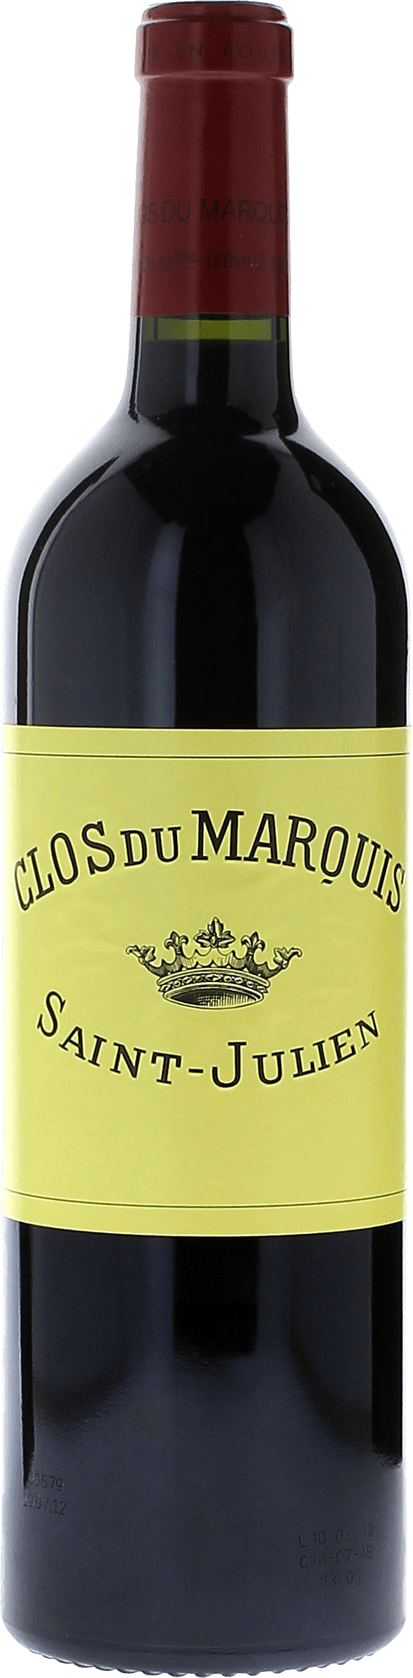 Clos du marquis 2007 2me vin de LEOVILLE LAS CASES Saint-Julien, Bordeaux rouge